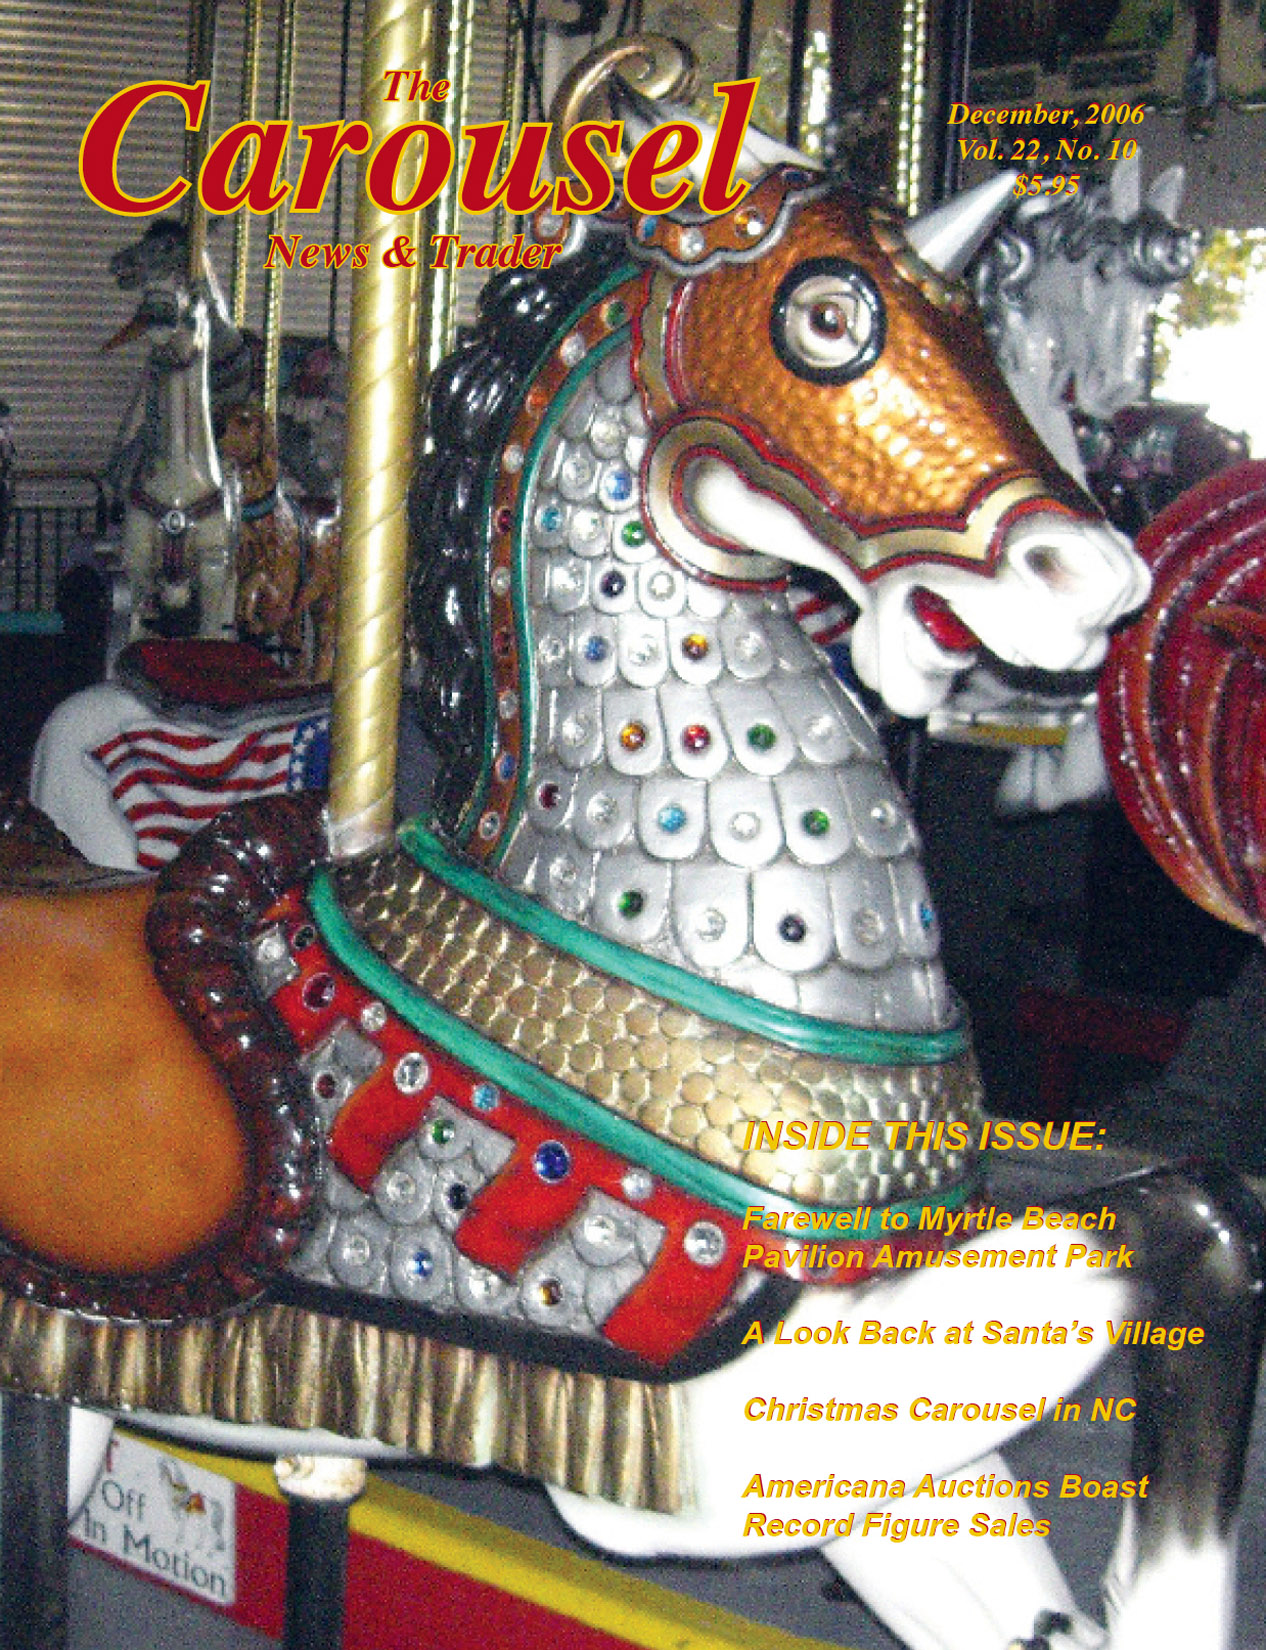 Issue No. 10, Vol. 22 – December 2006